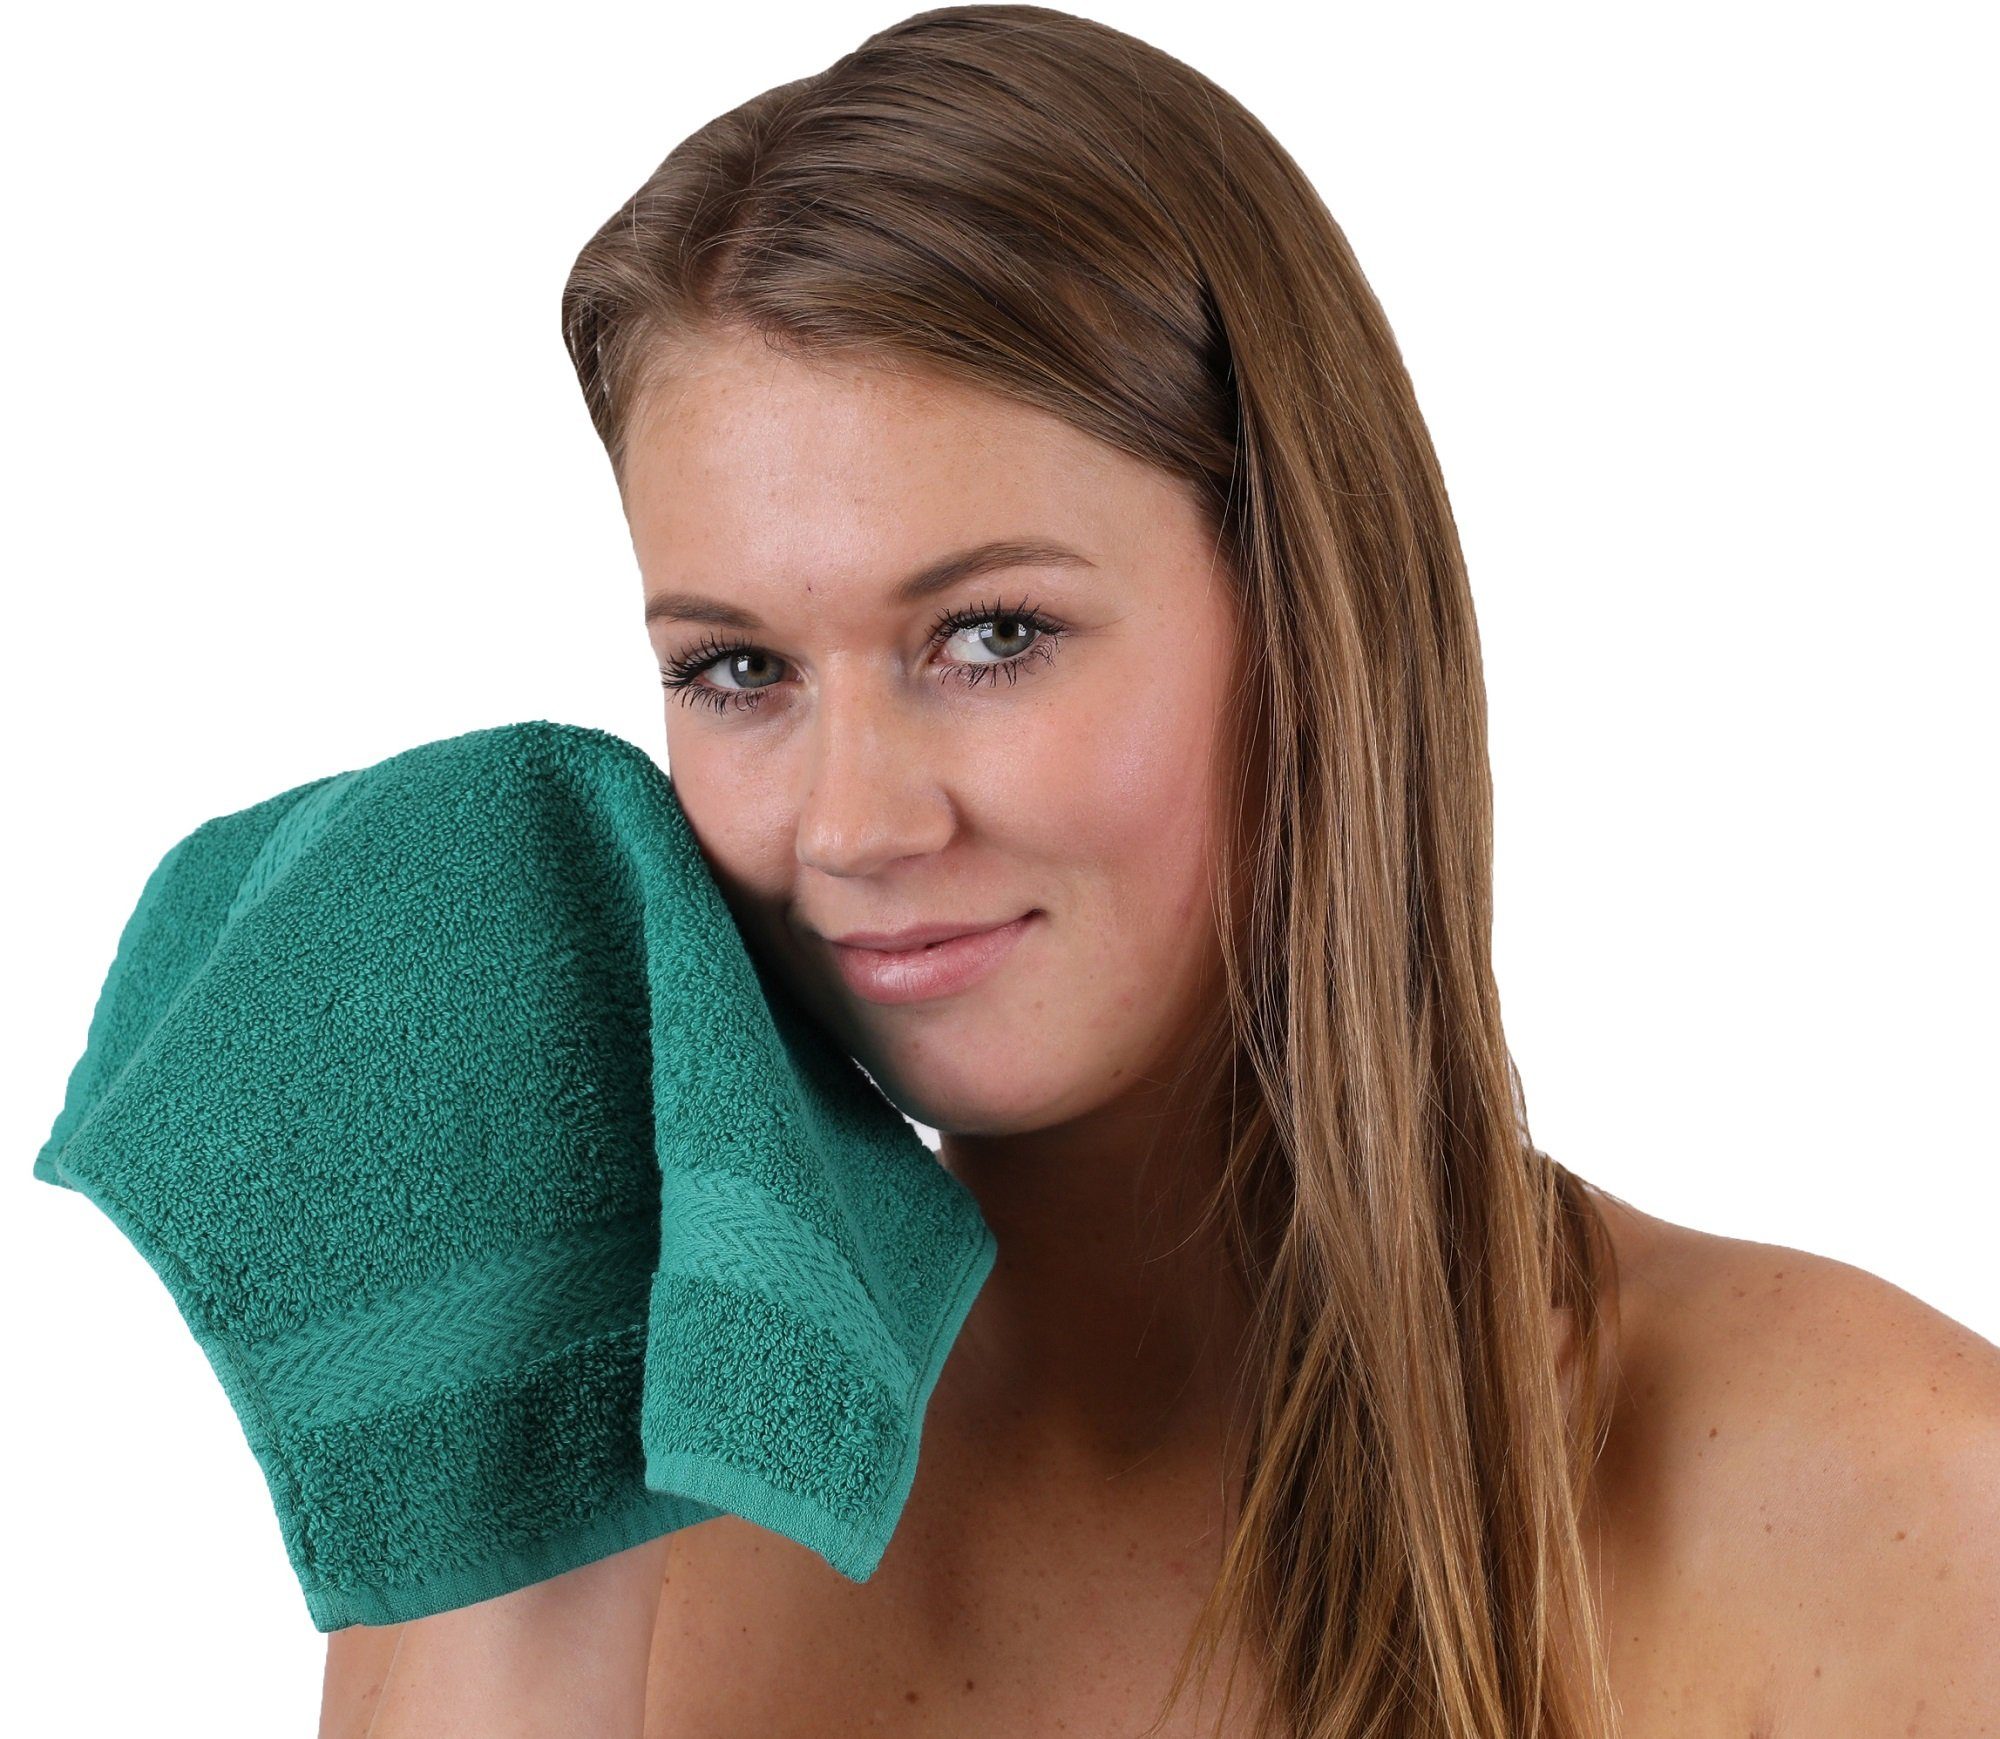 Handtuch Baumwolle apfelgrün Betz und Handtuch-Set smaragdgrün, 10-TLG. Farbe 100% Classic Set